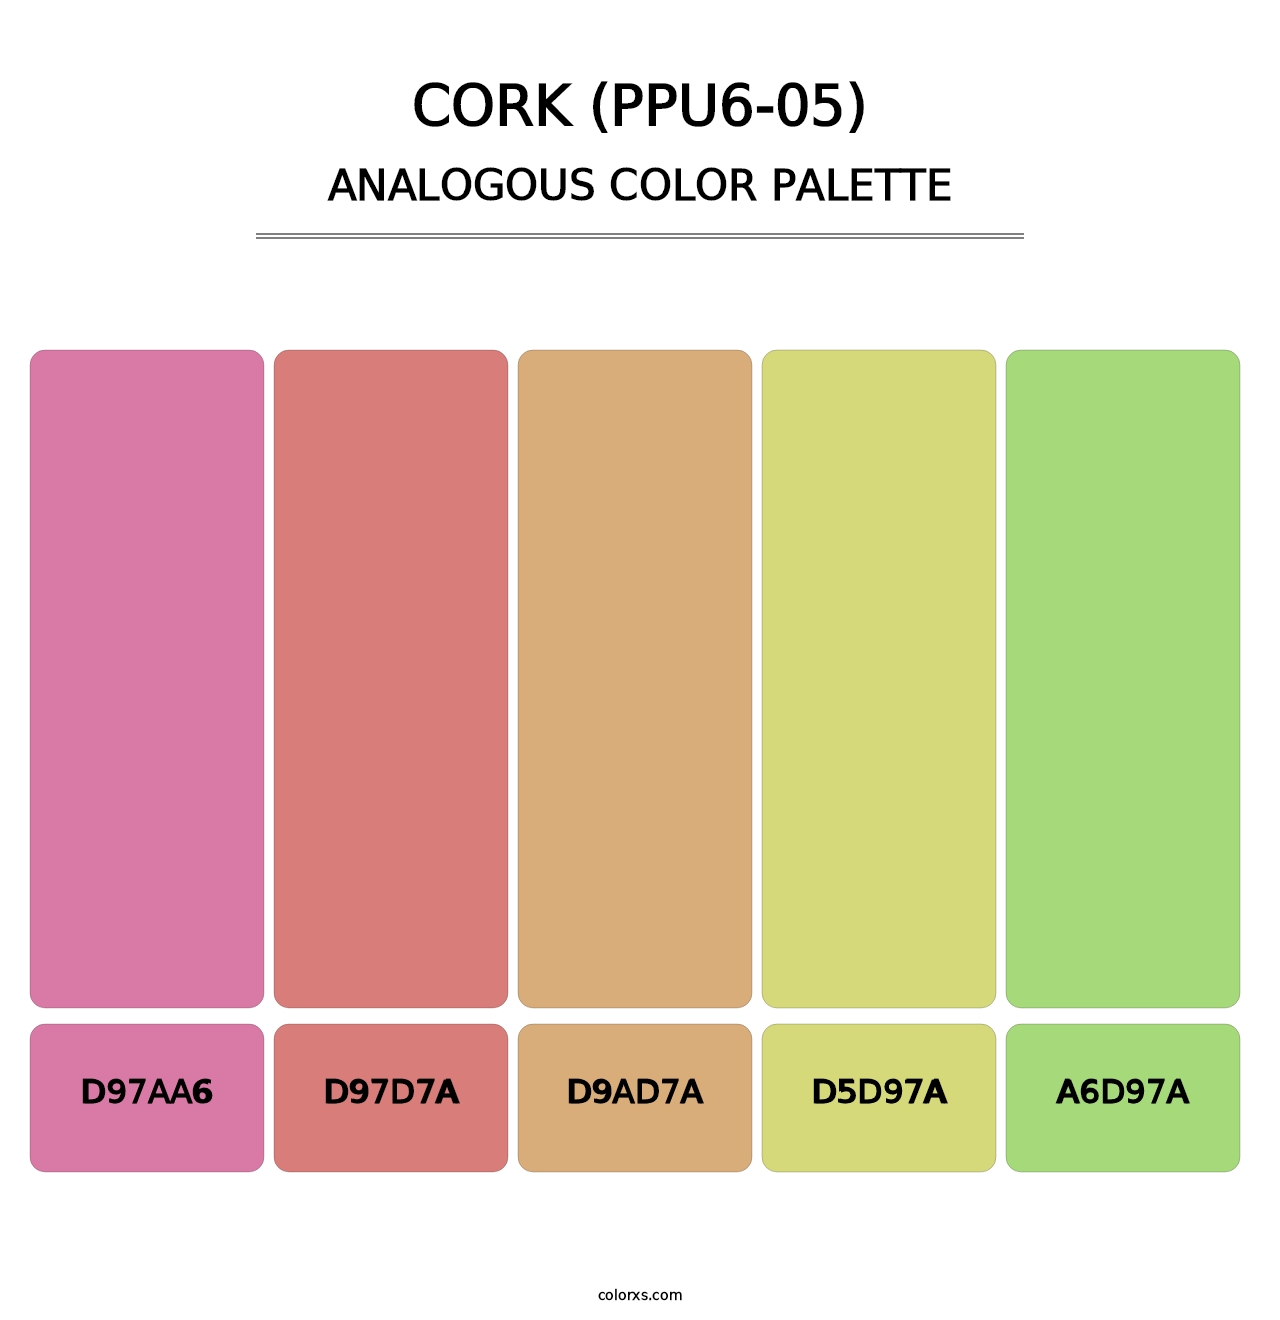 Cork (PPU6-05) - Analogous Color Palette